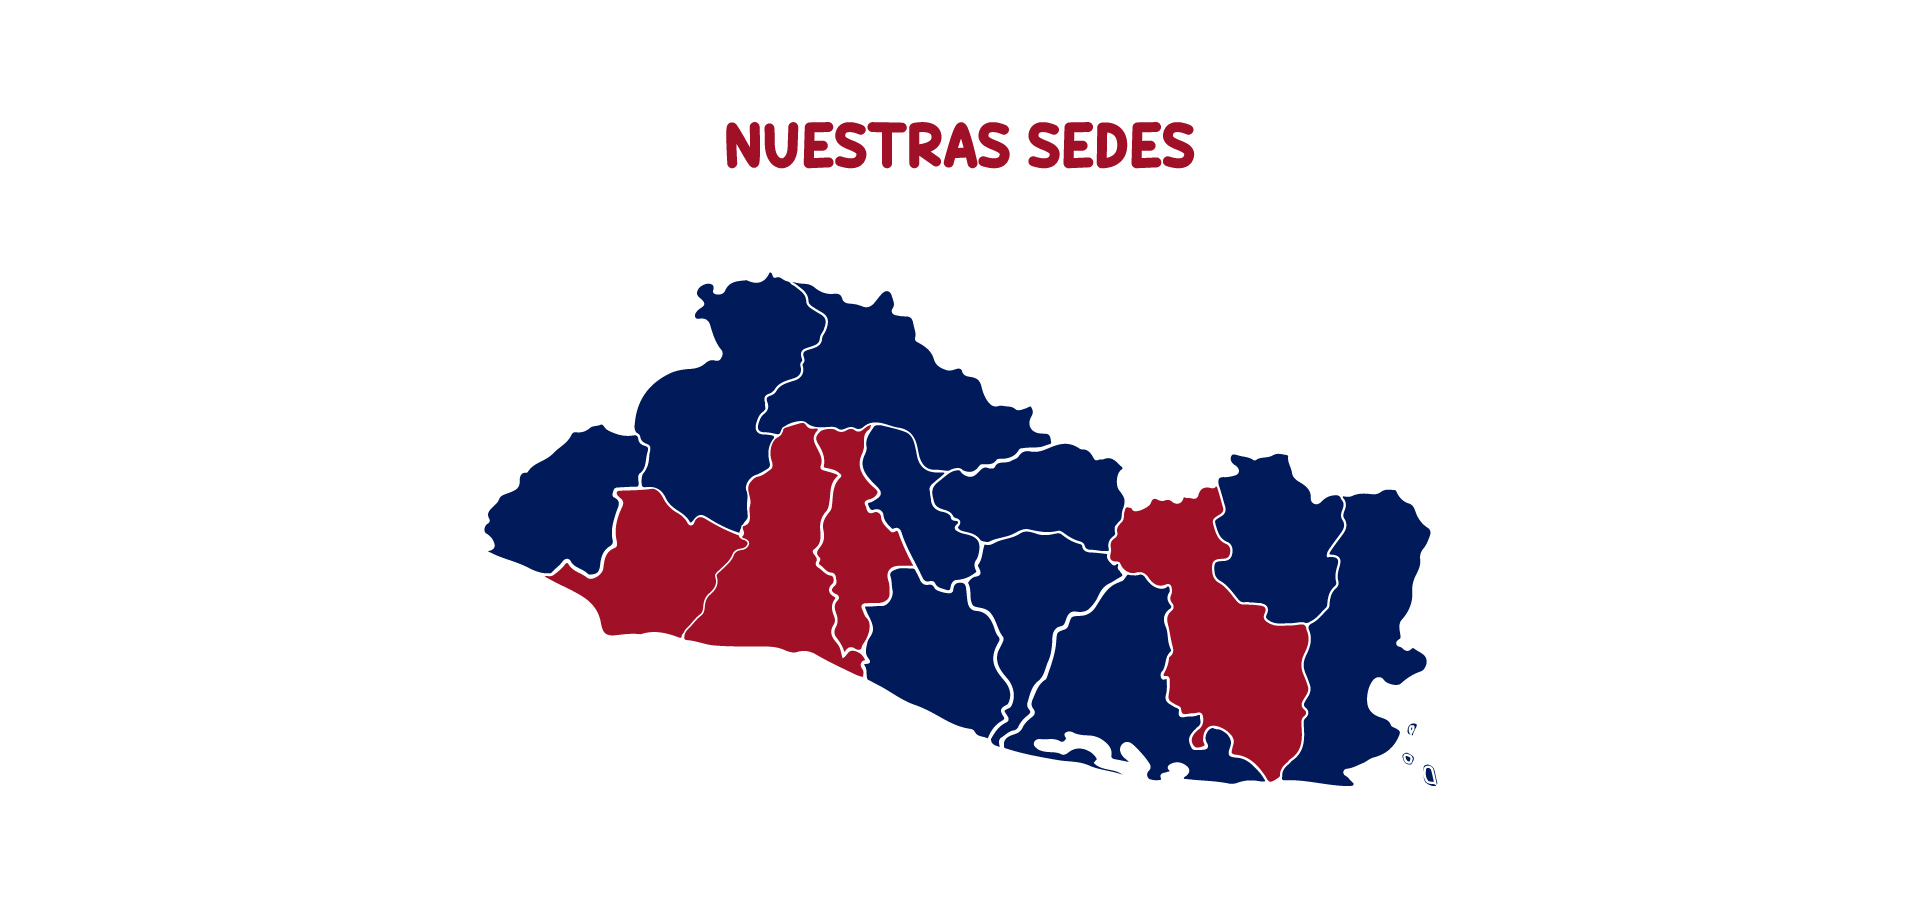 Mapa de El Salvador marcando los departamentos donde se encuentran las sedes